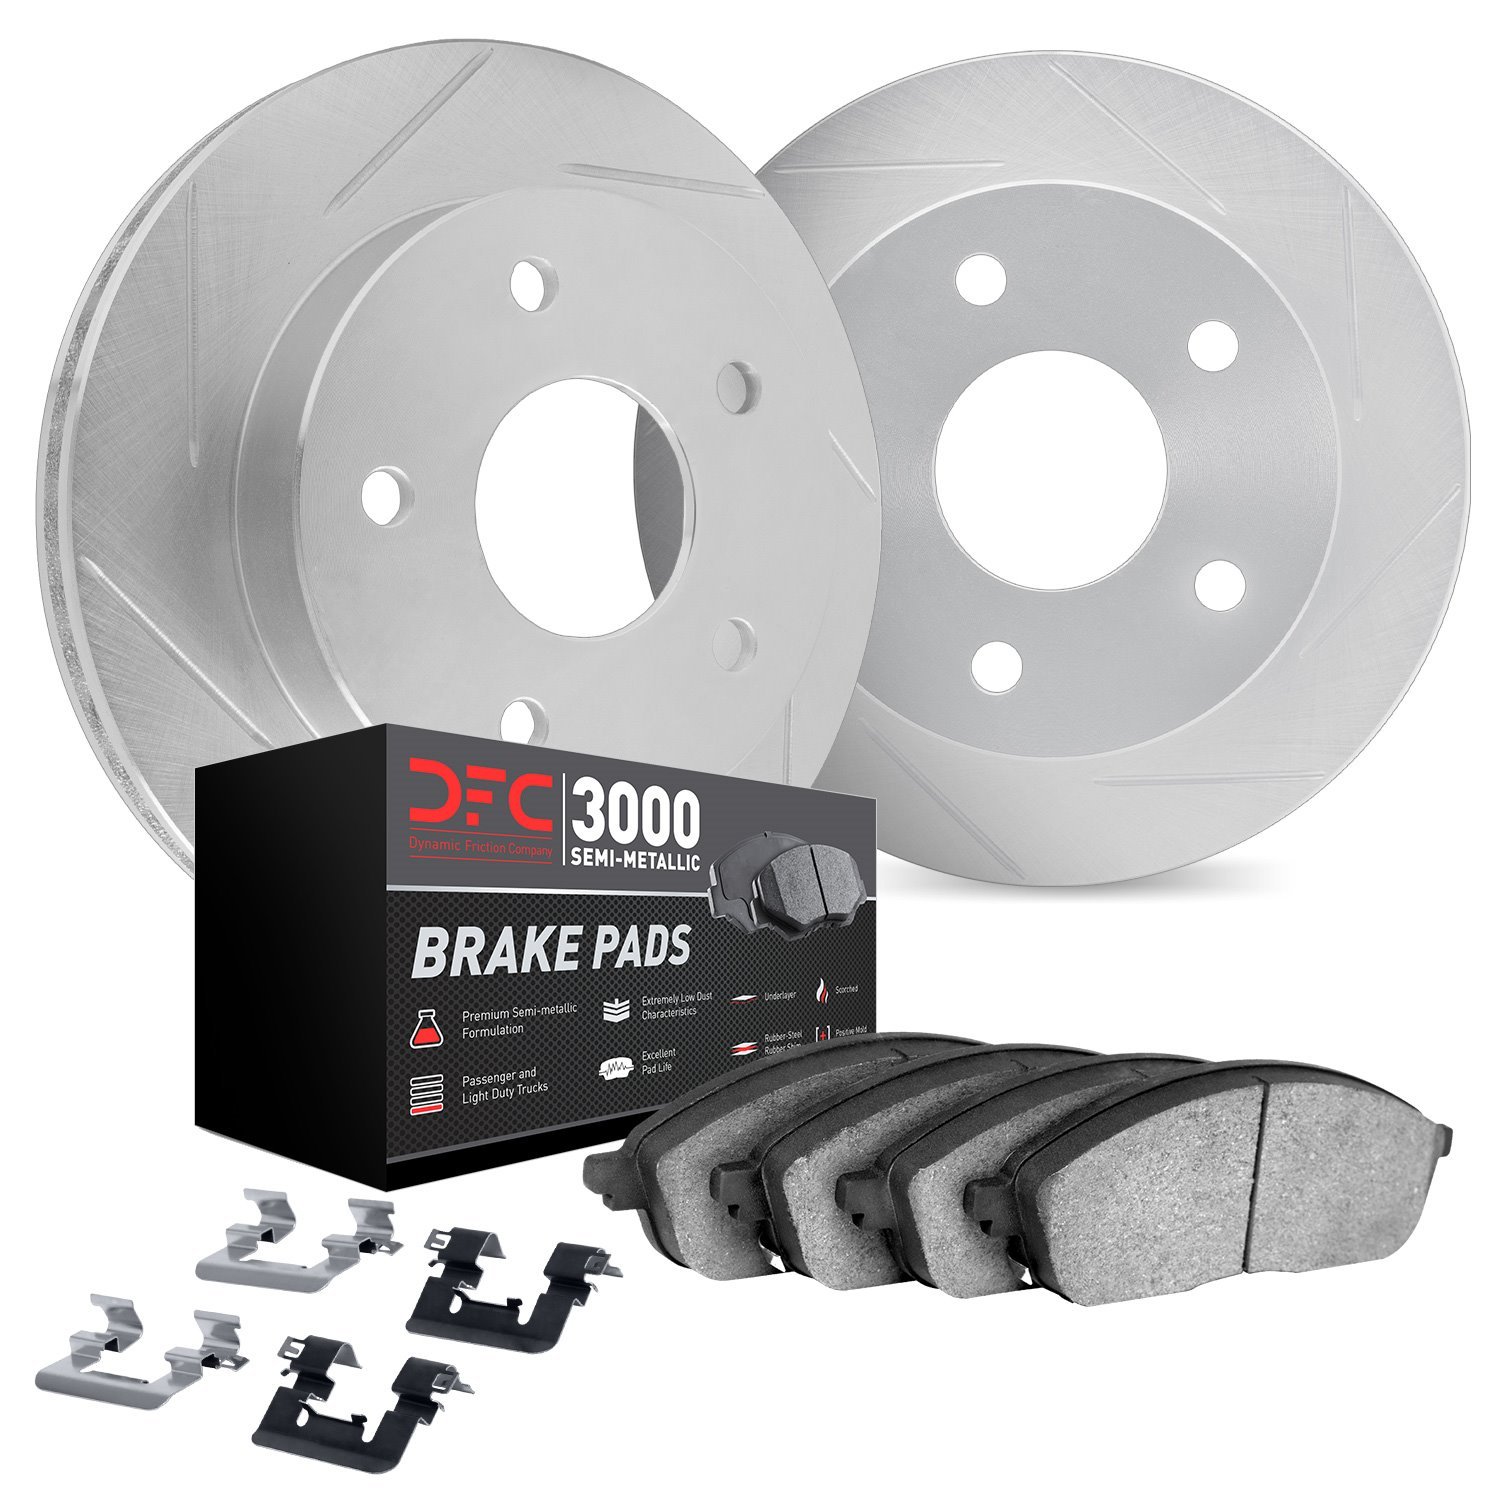 5112-63107 Slotted Brake Rotors with 3000-Series Semi-Metallic Brake Pads Kit & Hardware [Silver], 2006-2012 Mercedes-Benz, Posi